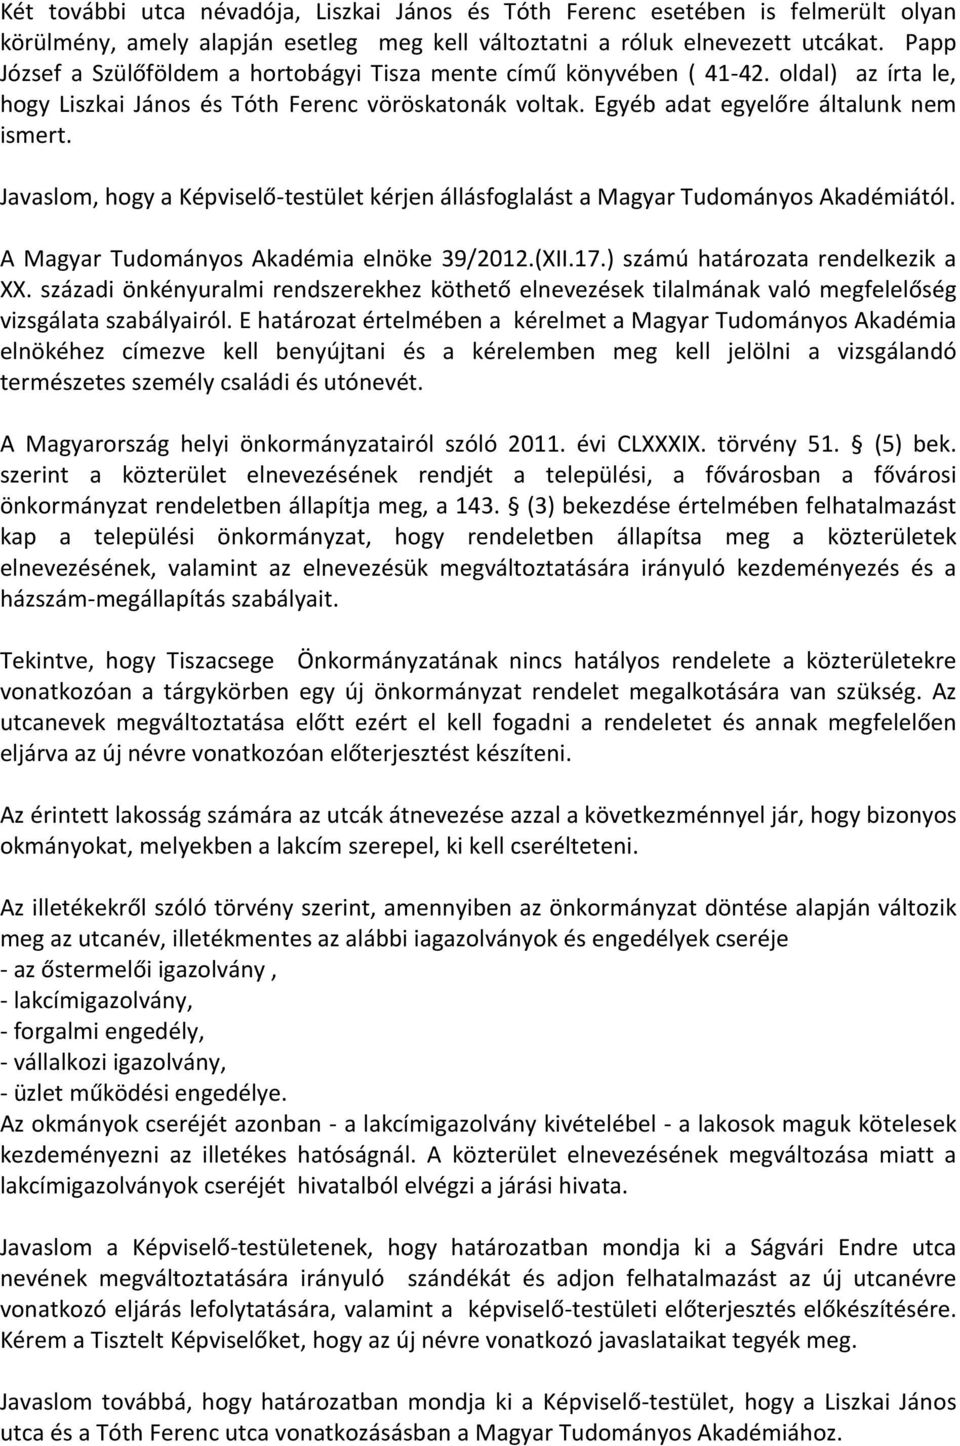 Javaslom, hogy a Képviselő-testület kérjen állásfoglalást a Magyar Tudományos Akadémiától. A Magyar Tudományos Akadémia elnöke 39/2012.(XII.17.) számú határozata rendelkezik a XX.